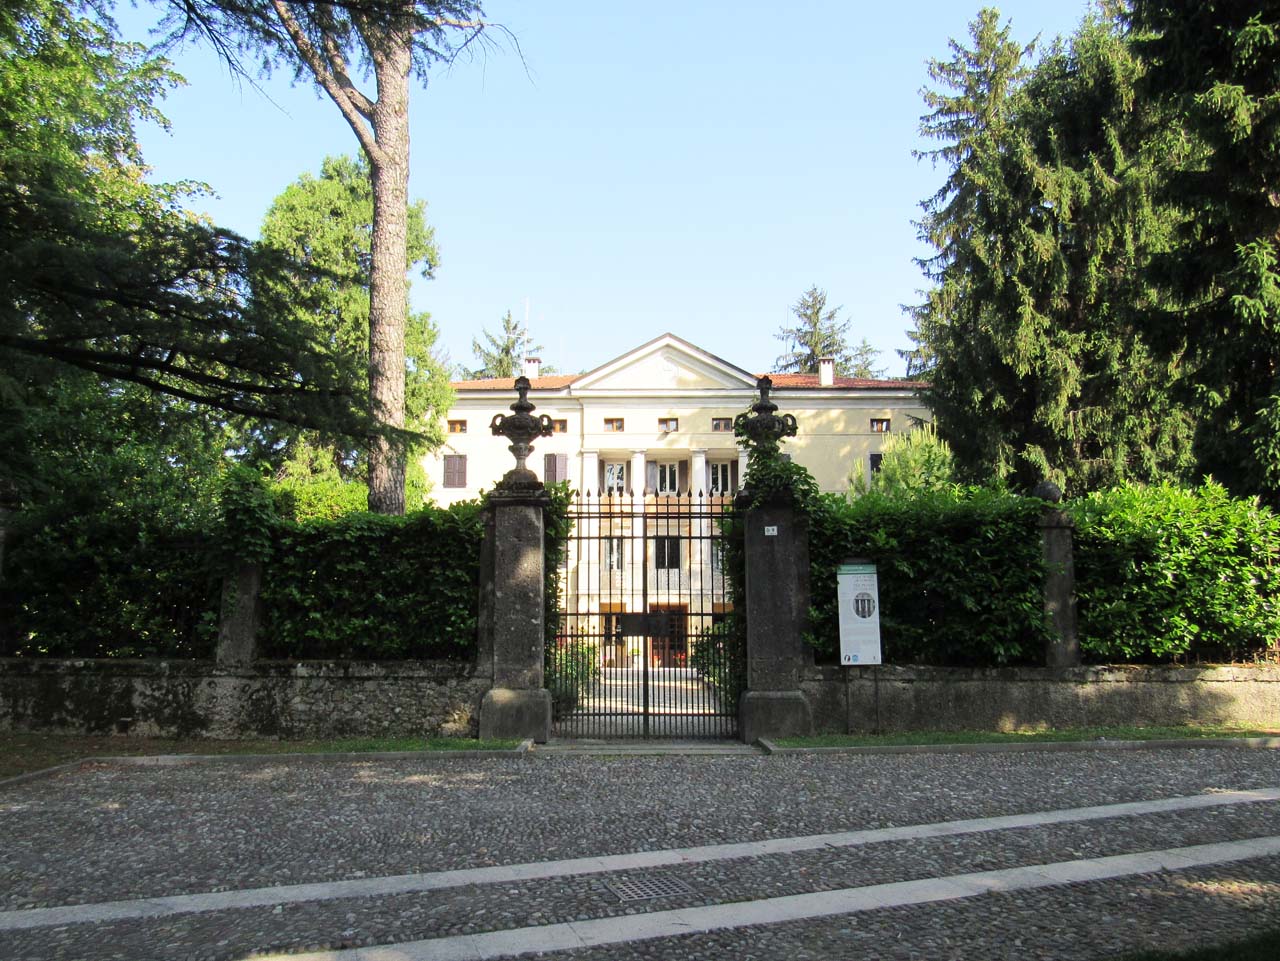 Villa de' Concina, Ticozzi con parco antistante (villa, privata) - San Daniele del Friuli (UD) 